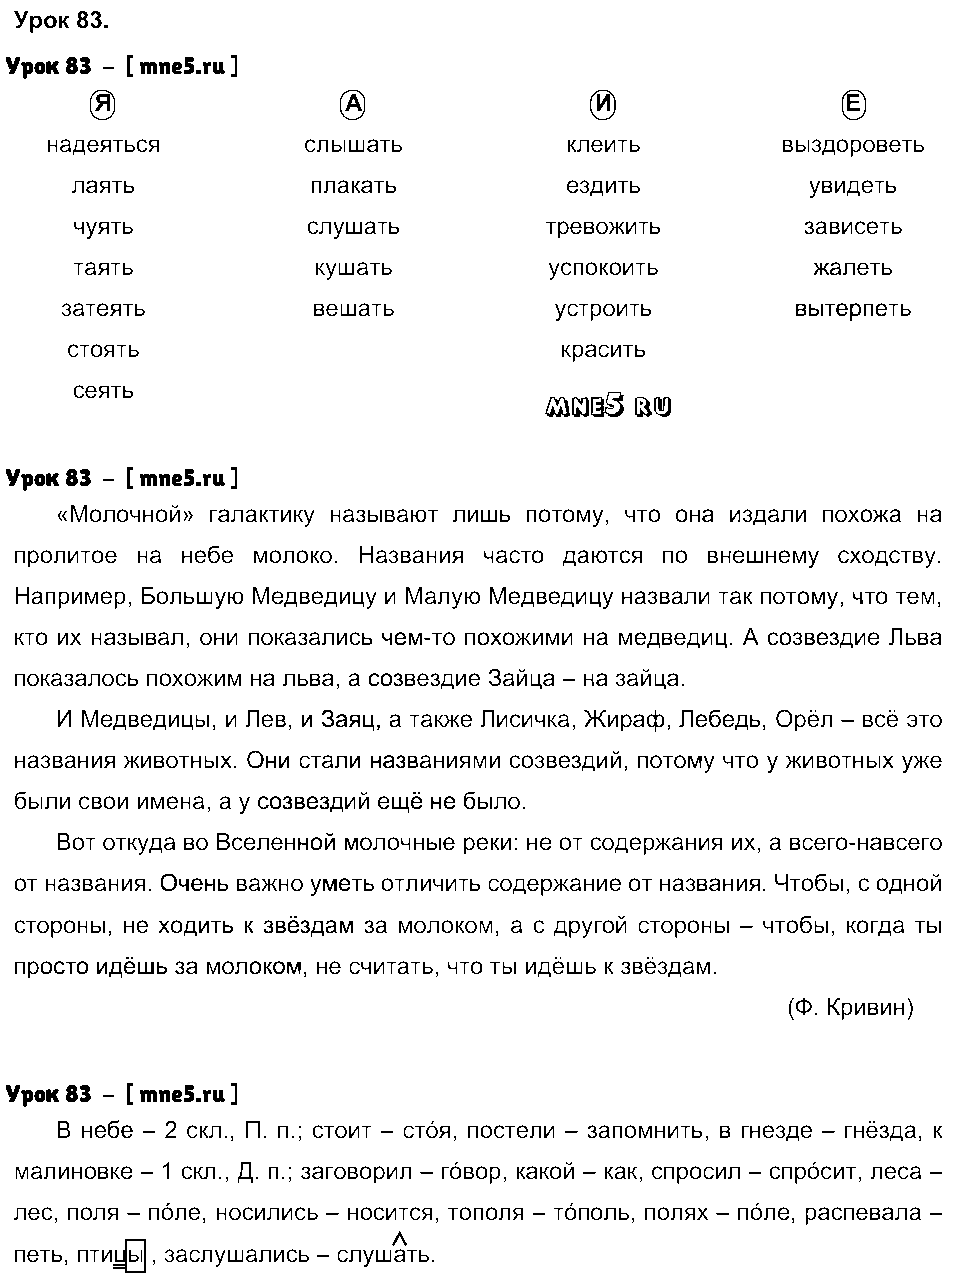 ГДЗ Русский язык 4 класс - Урок 83